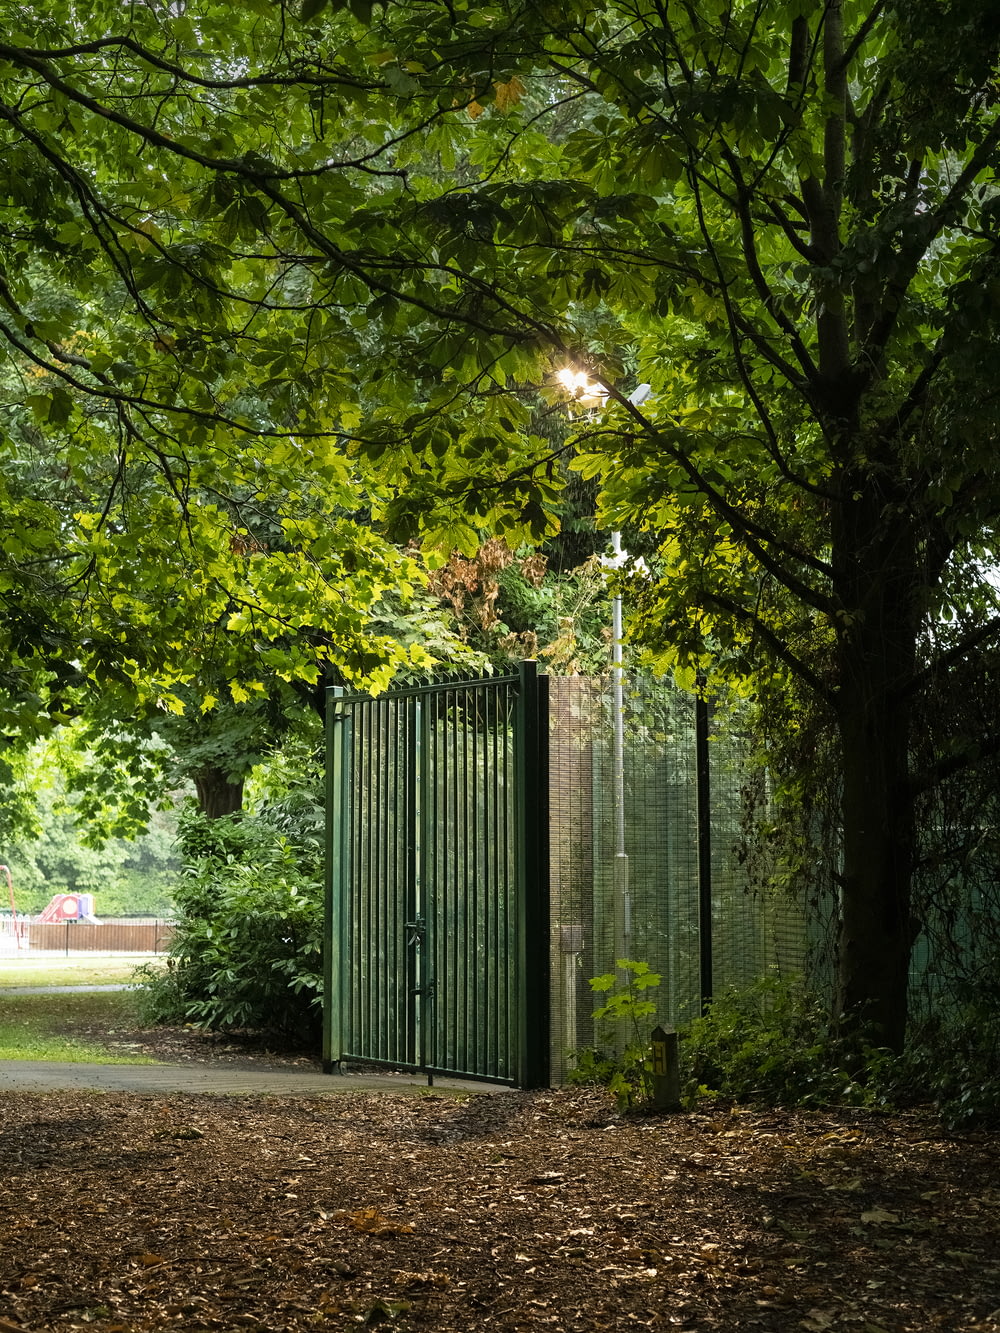 cancello di metallo verde vicino agli alberi verdi durante il giorno